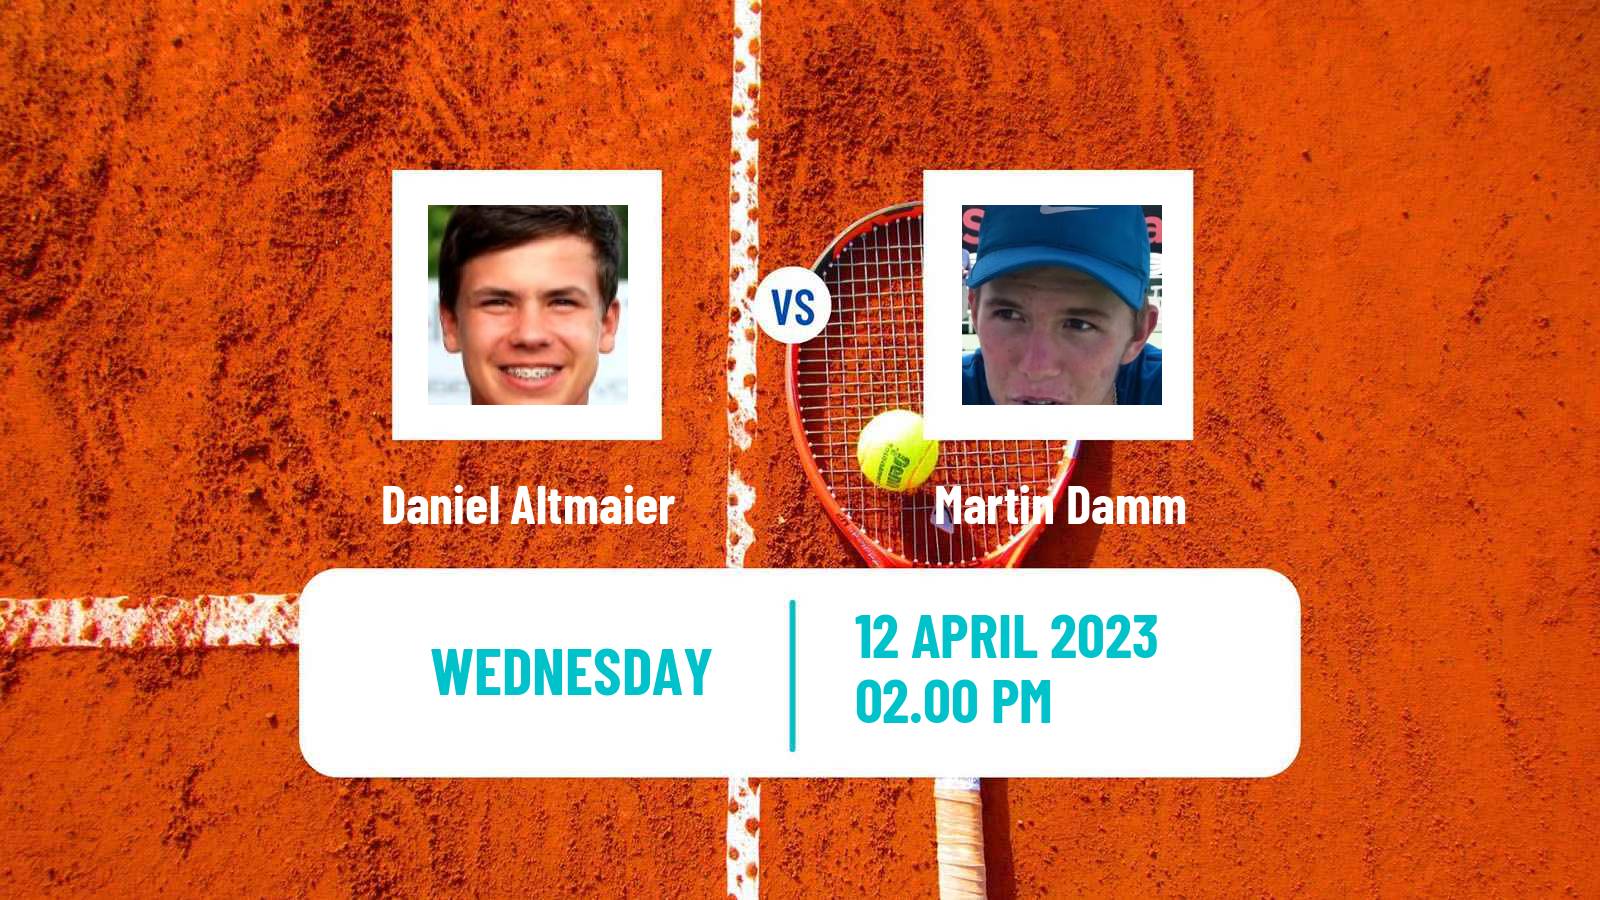 Tennis ATP Challenger Daniel Altmaier - Martin Damm